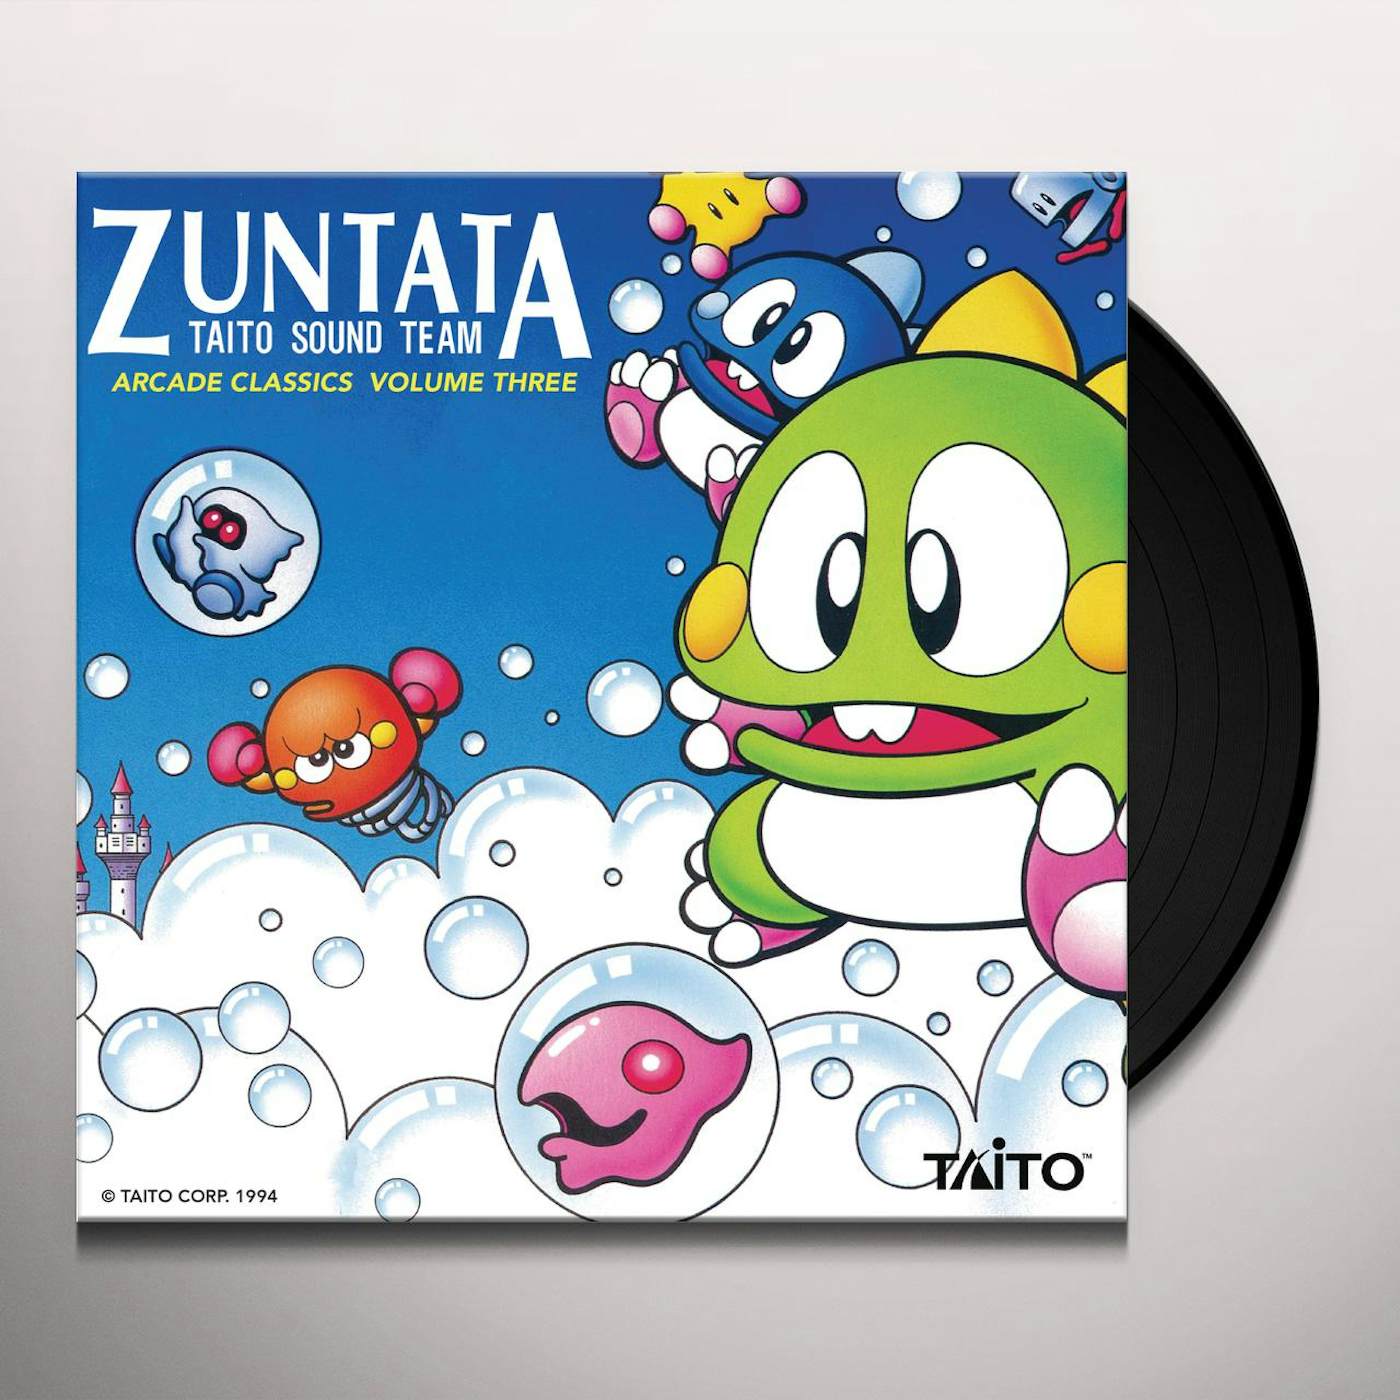 ZUNTATA ARCADE CLASSICS VOL. 3 Vinyl Record